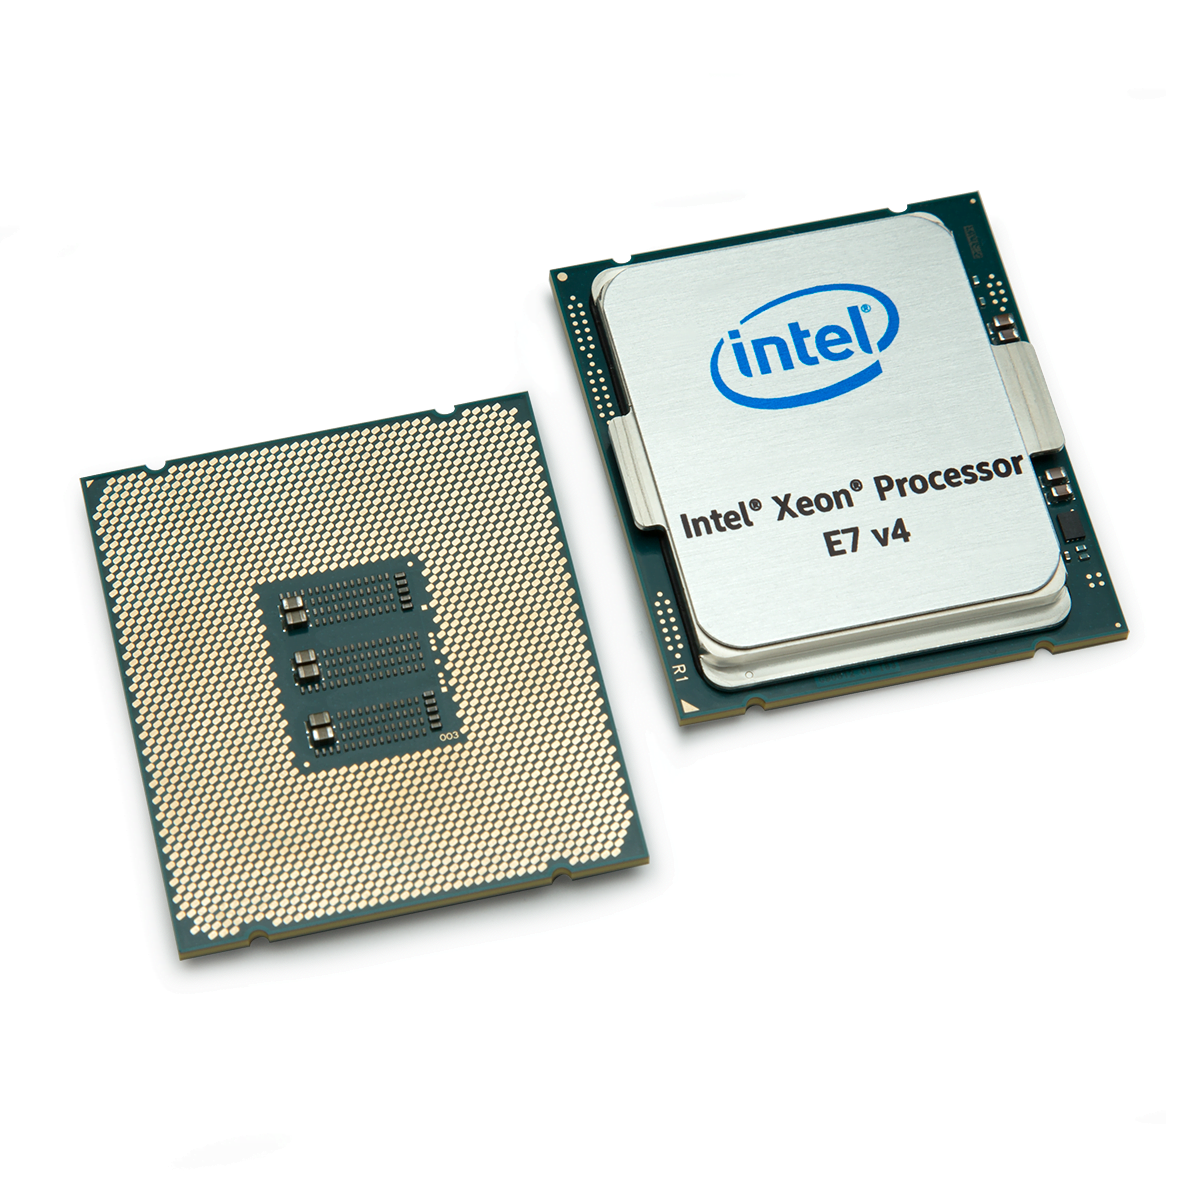 La famiglia di processori Intel® Xeon® E7 v4 accelera i dati e trasforma il business 1